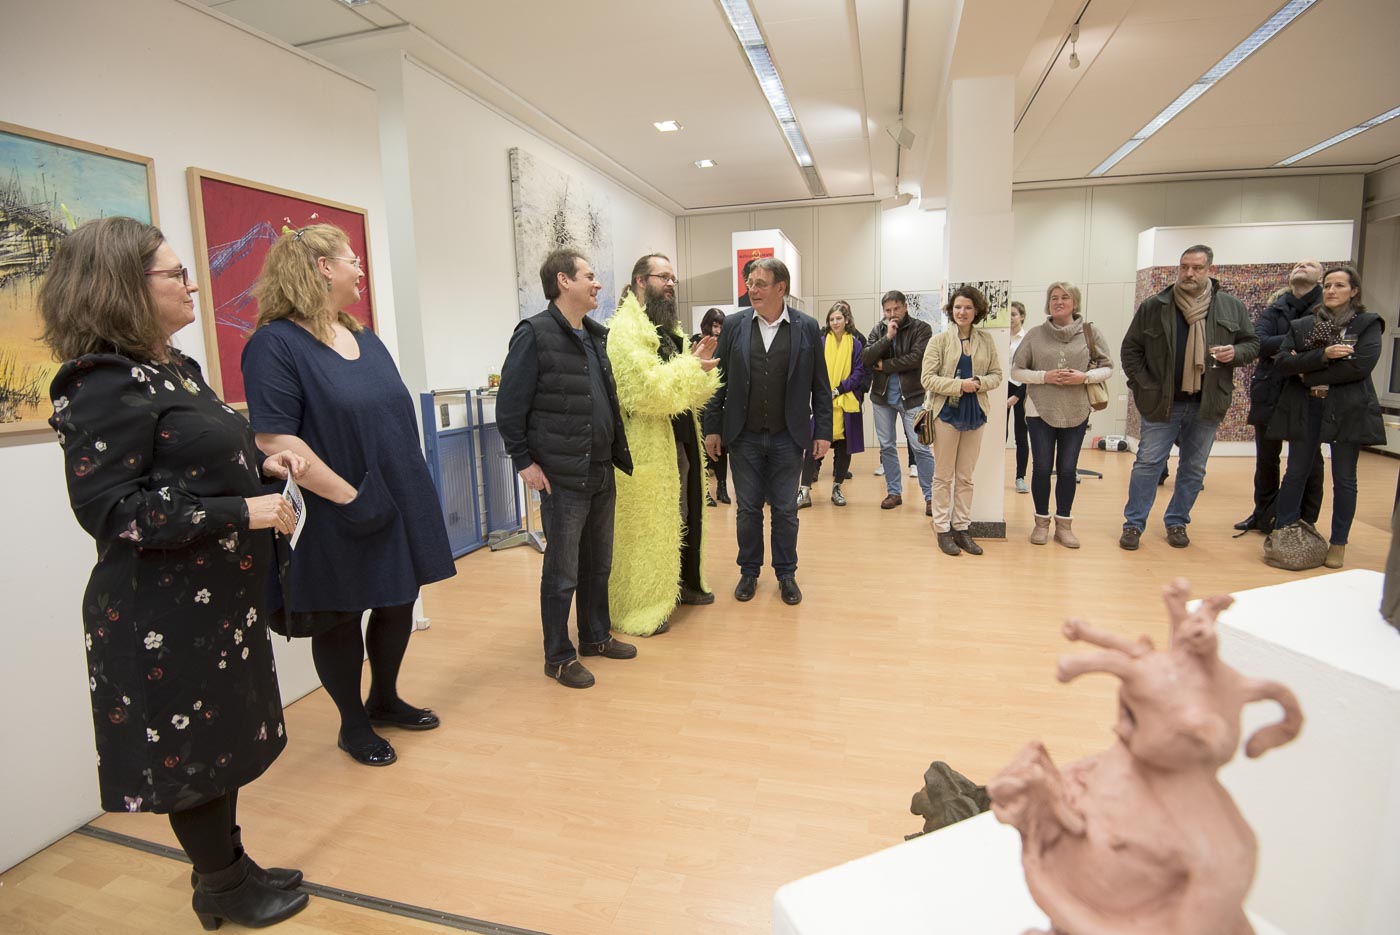 Daniela Herbst und Jan Heartmann stellen in der BBK Galerie Frankfurt aus